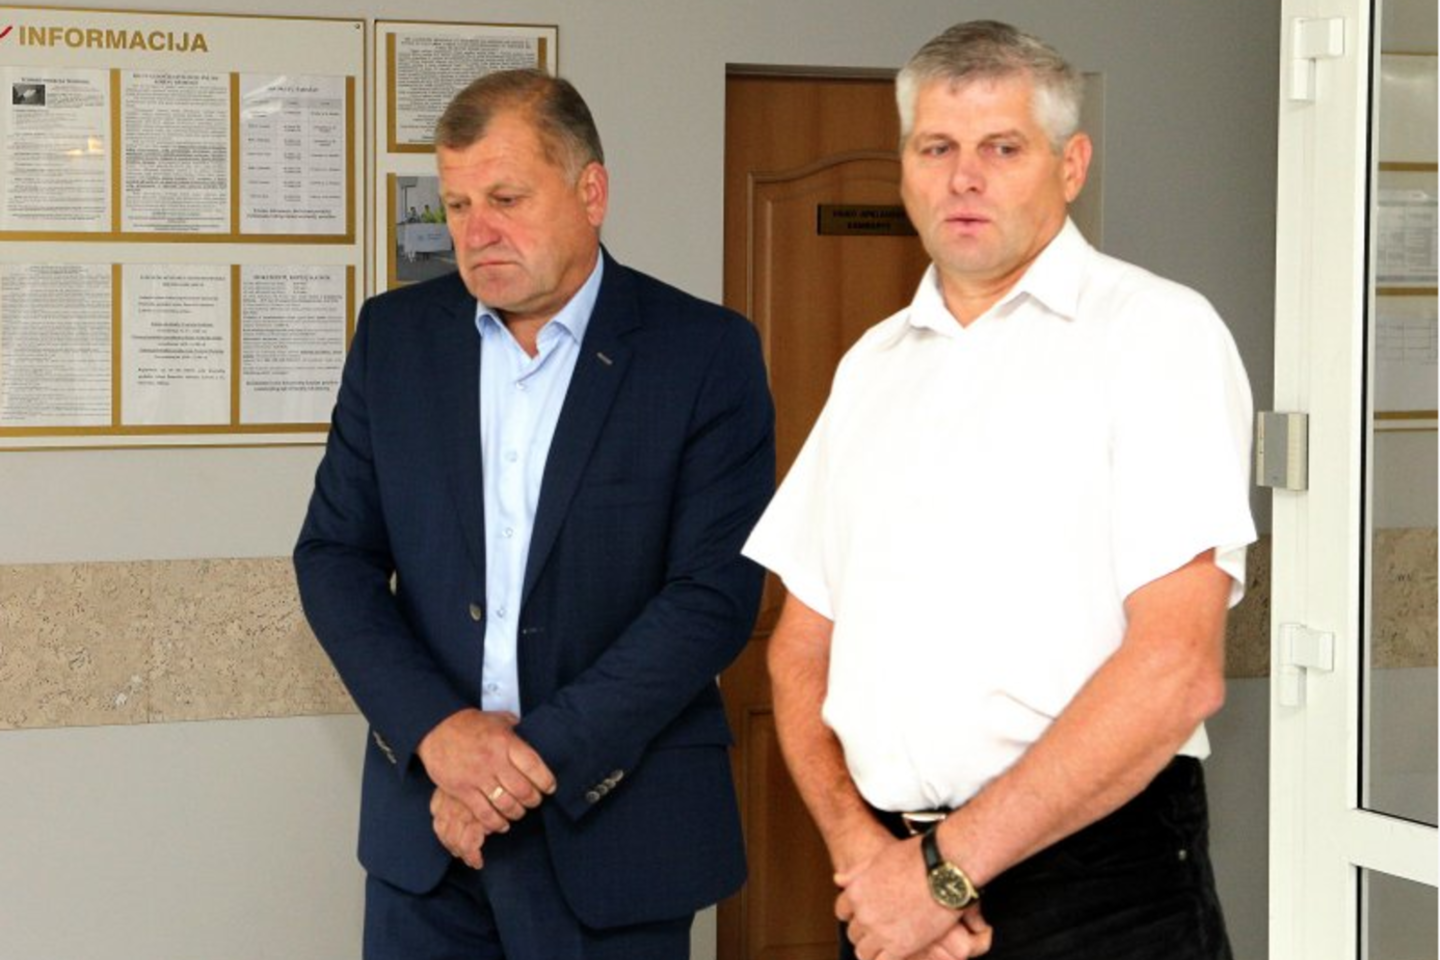  Teisme buvo apklaustas su teisiamu A.Tymuku (dešinėje) tekilą gėręs E.Mališauskas. <br> A.Švelnos nuotr.